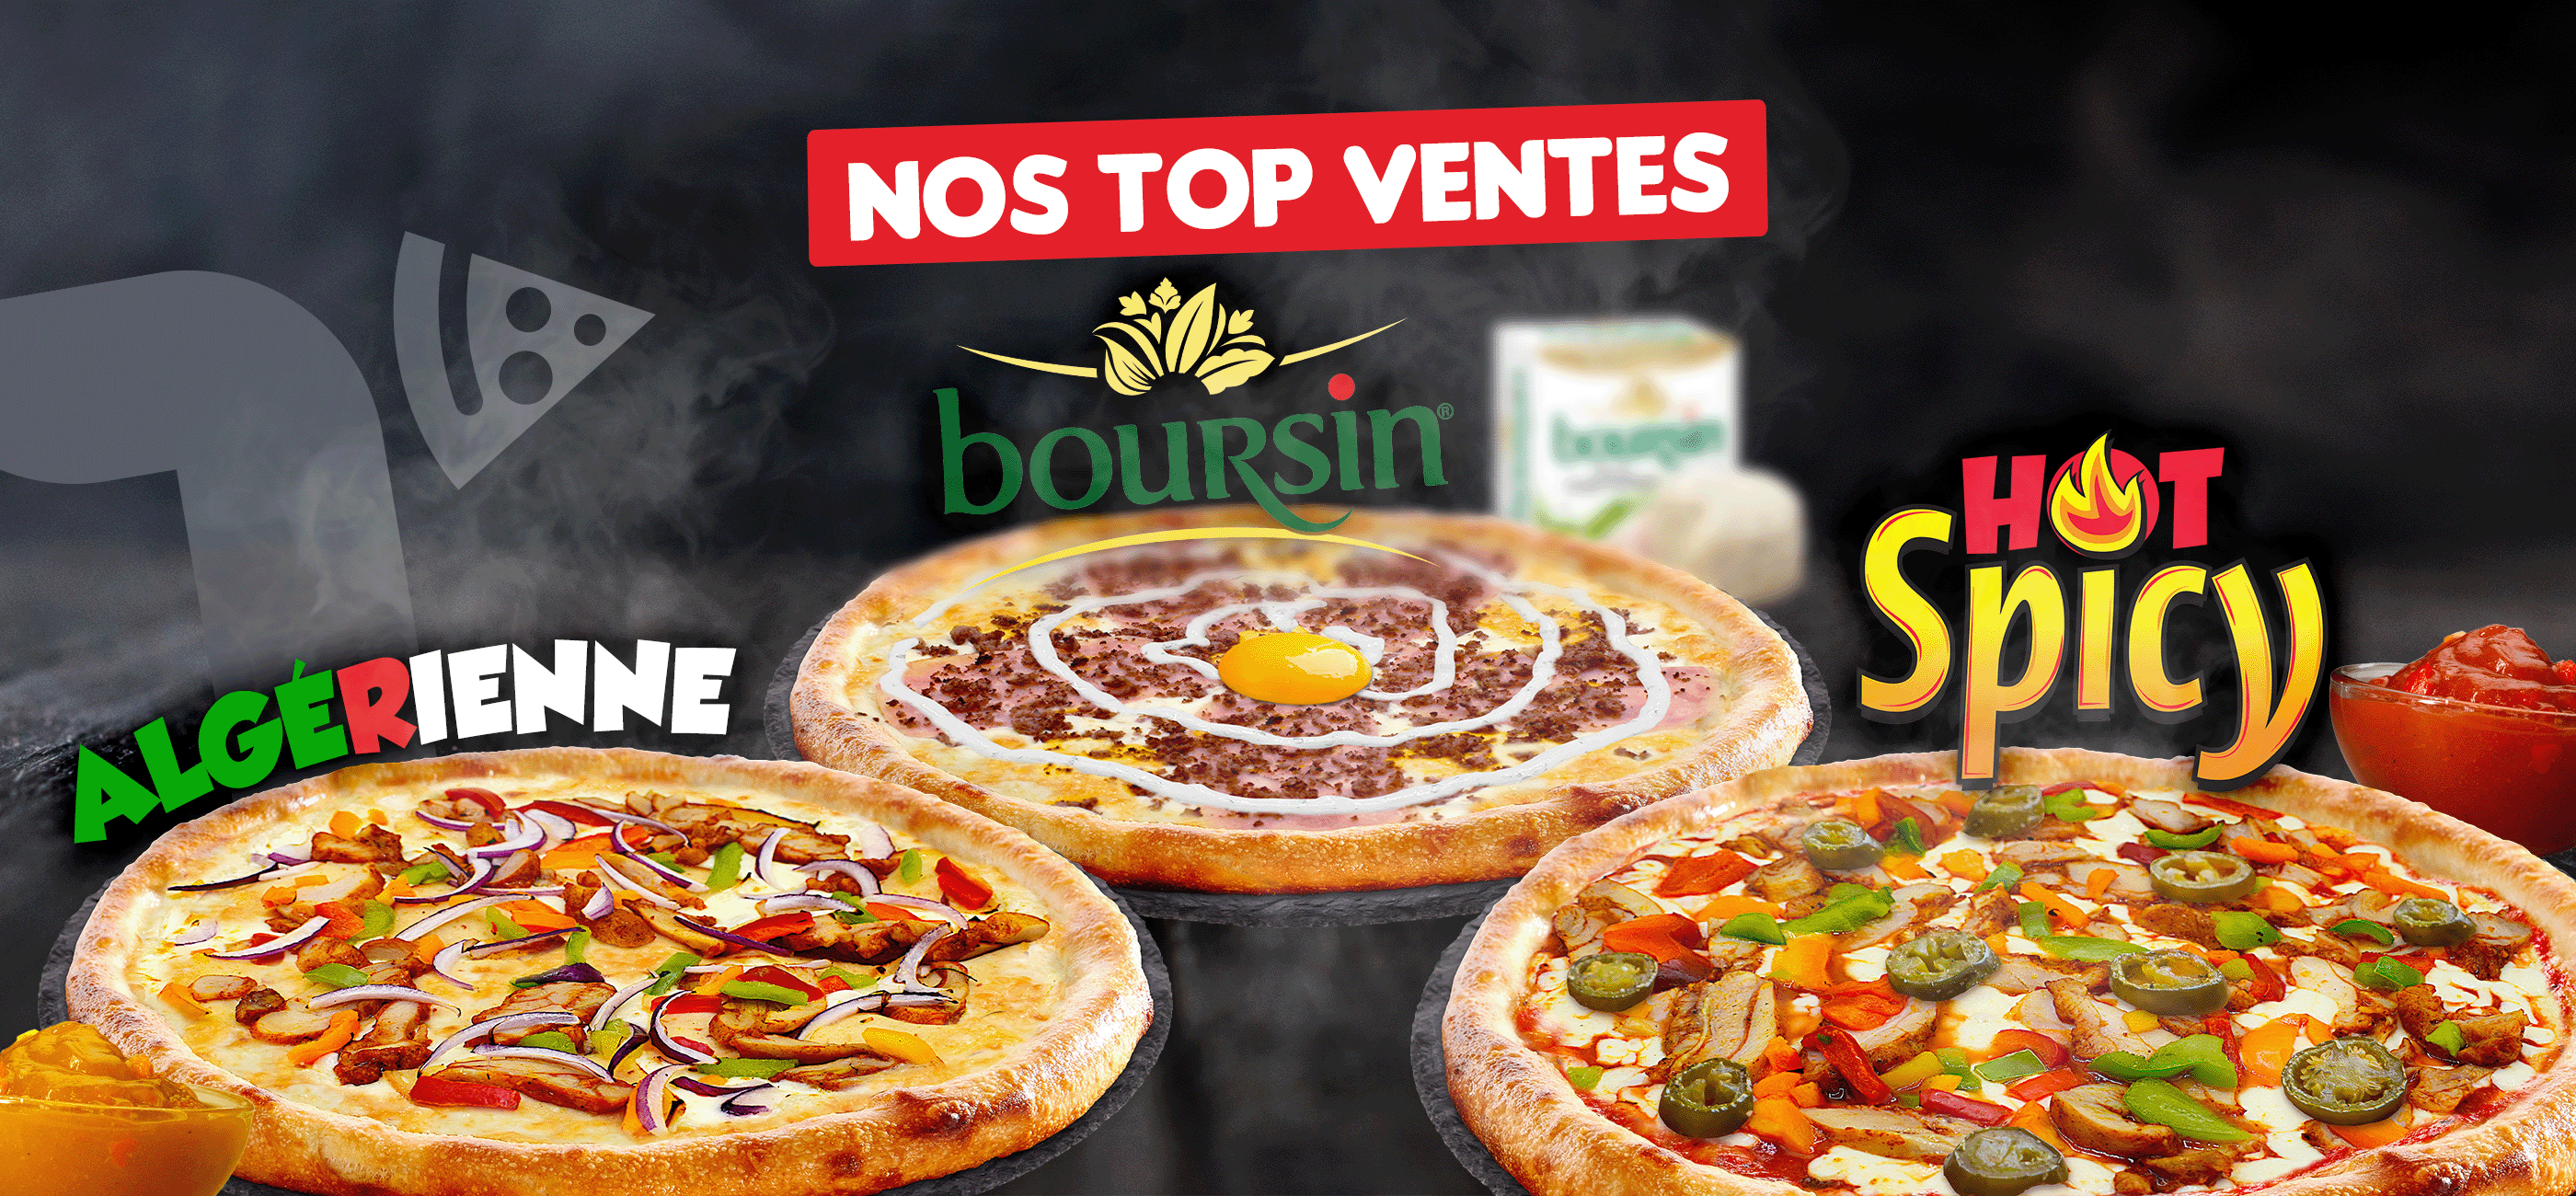 Top Ventes : Pizza Méxicaine, Boursin et Hot Spicy